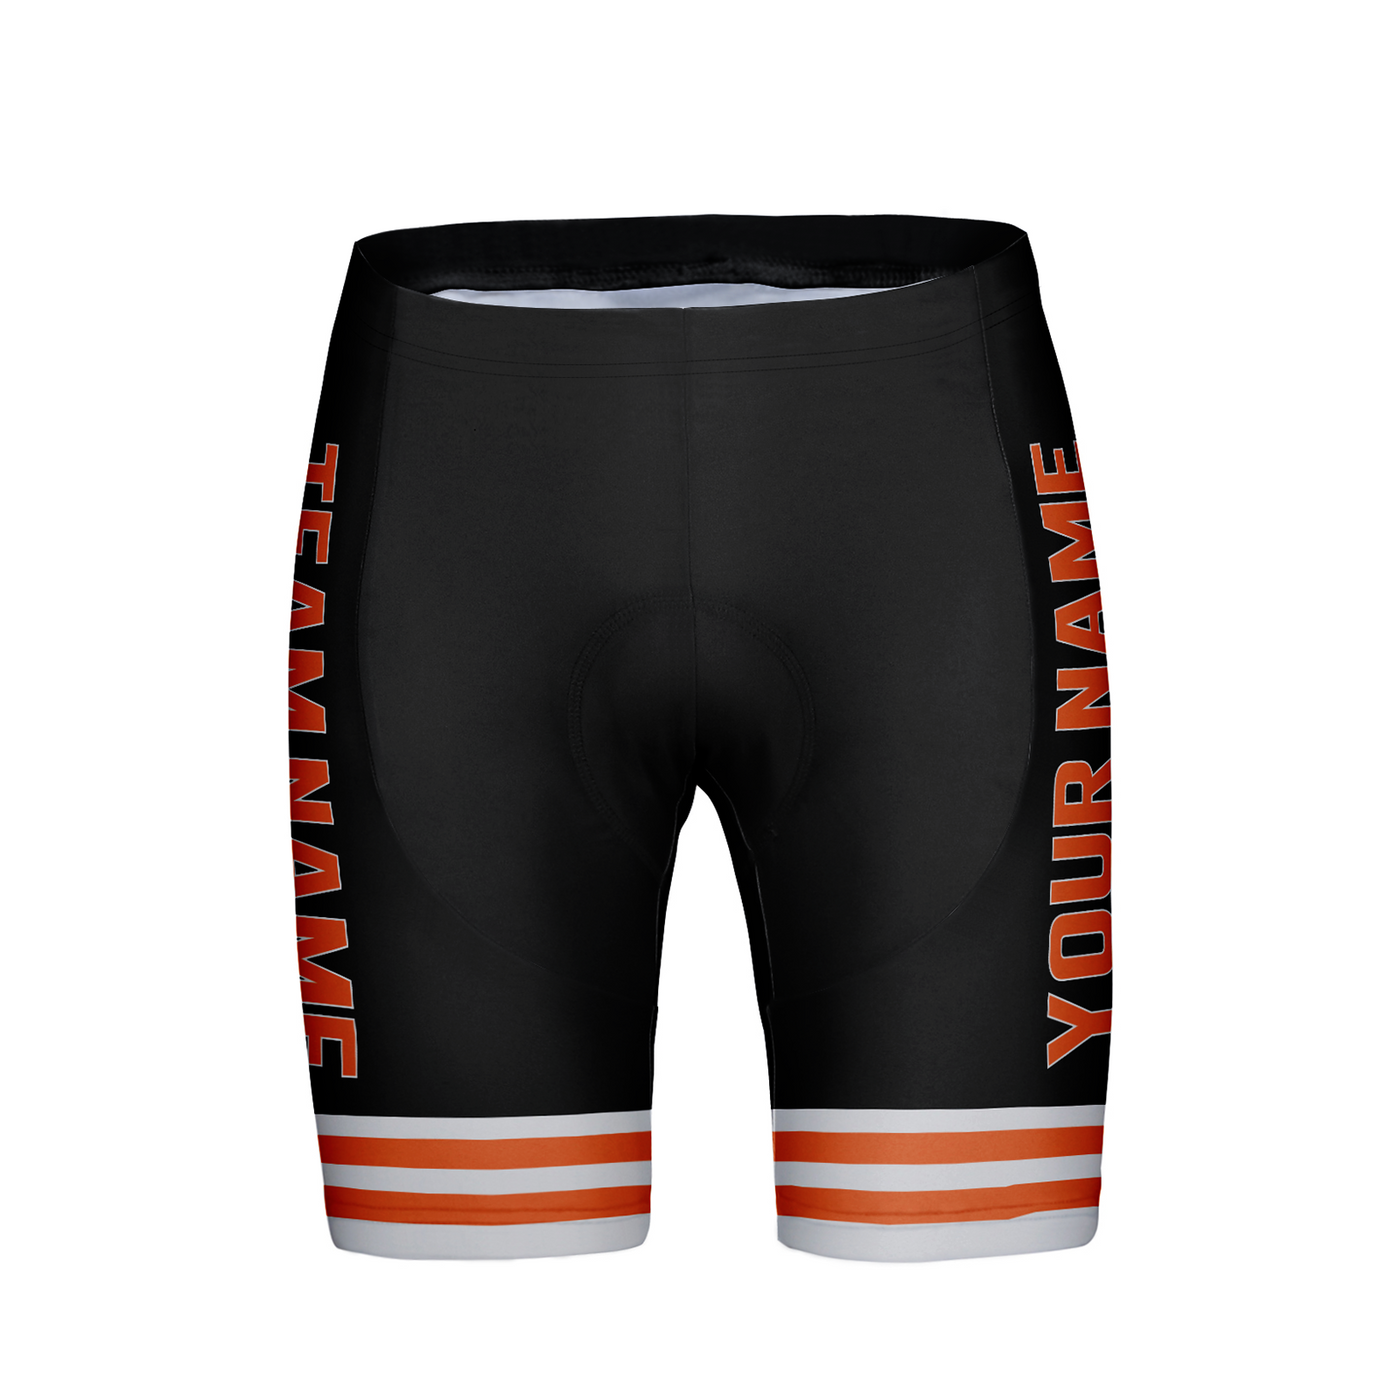 Customized Cleveland Team Unisex Cycling Shorts